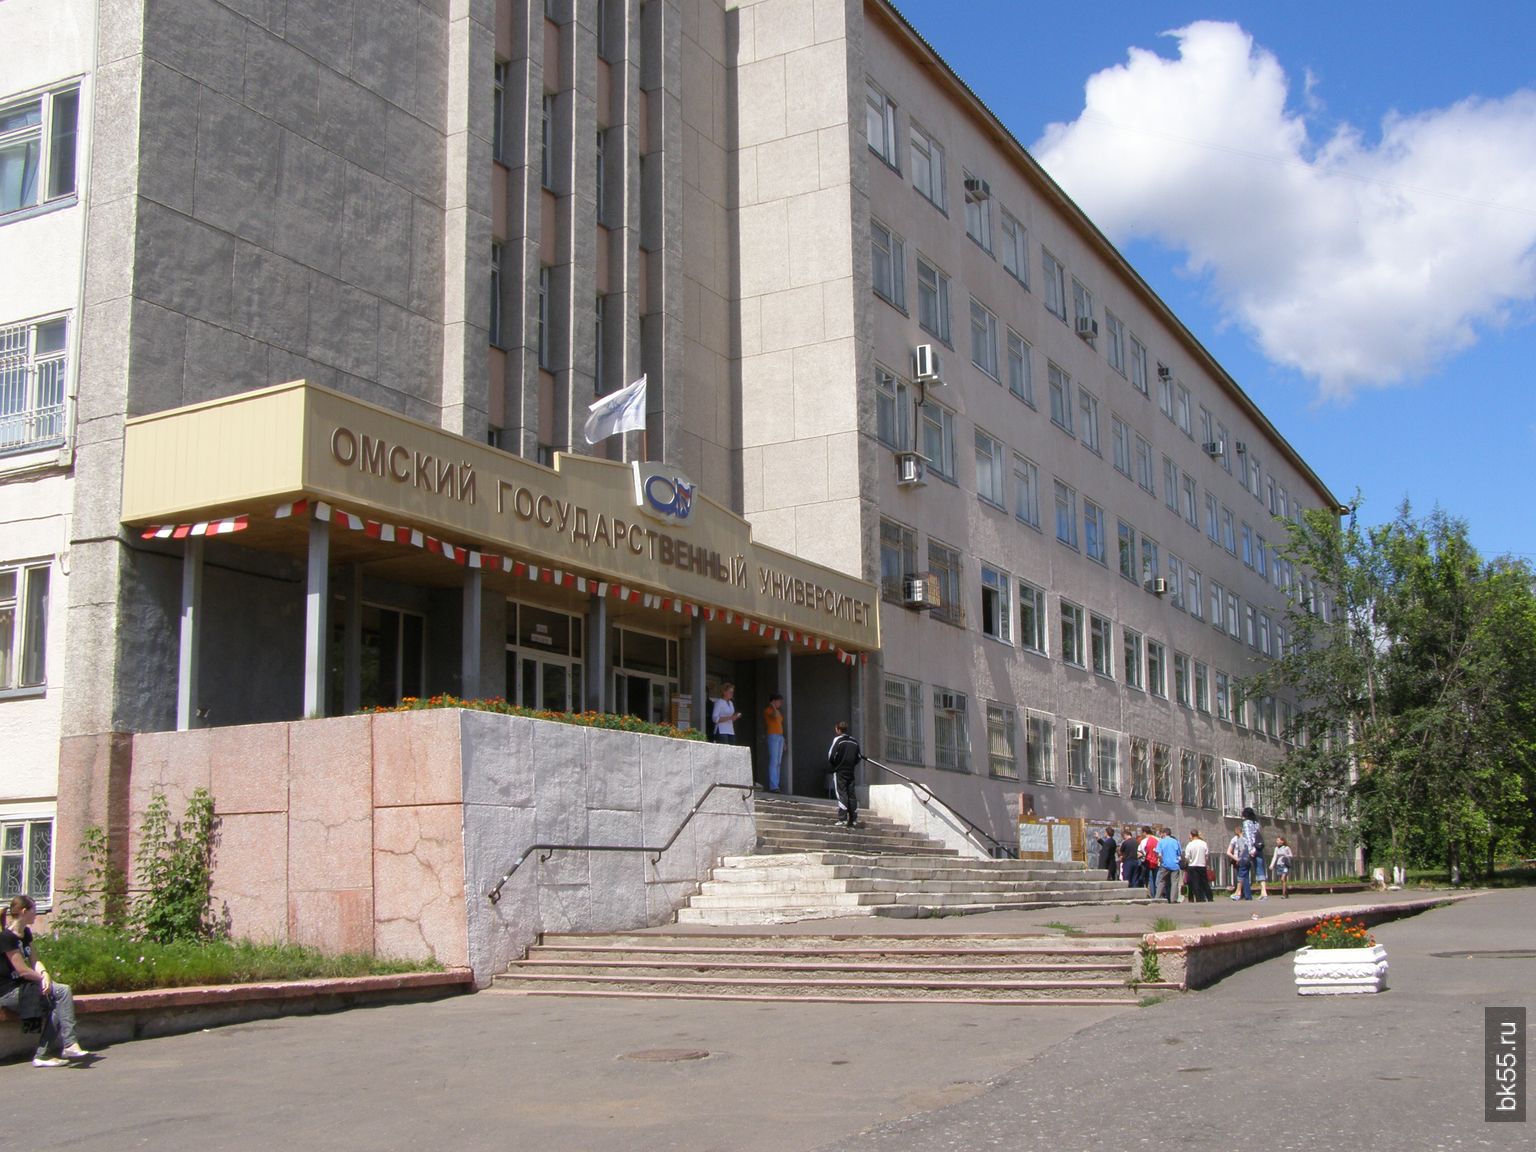 Сайт университета достоевского